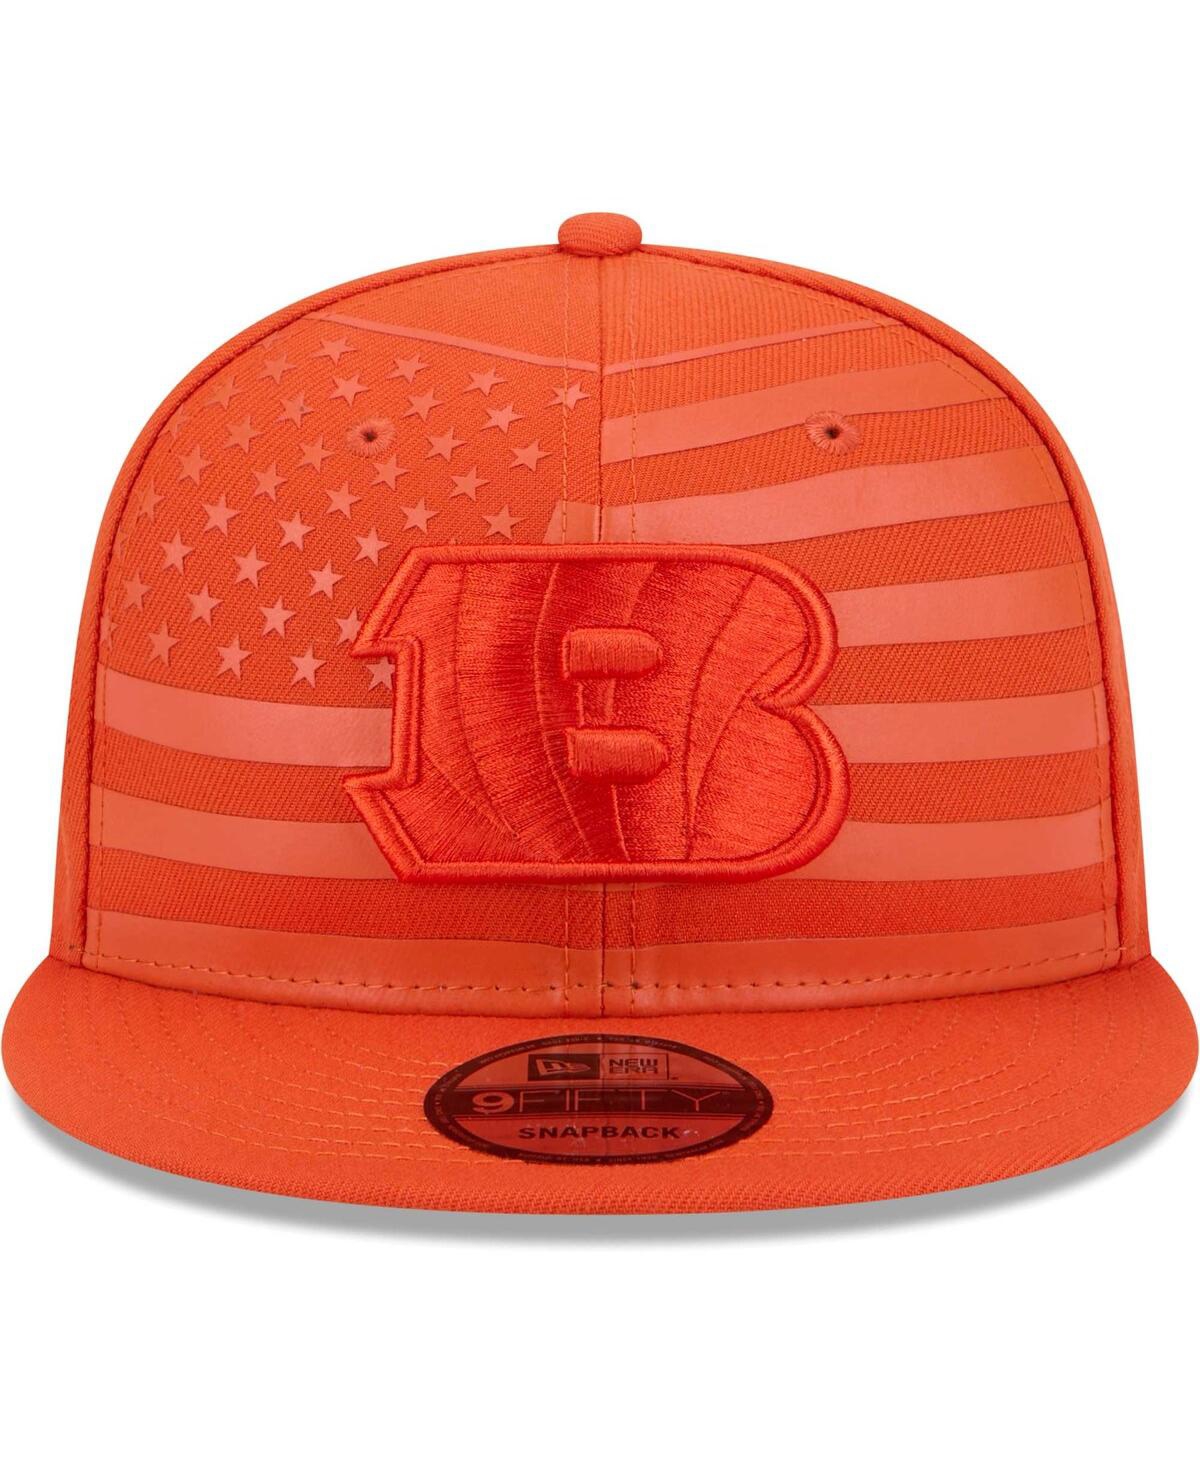 Shop New Era Men's Orange Cincinnati Bengals Independent 9fifty Snapback Hat